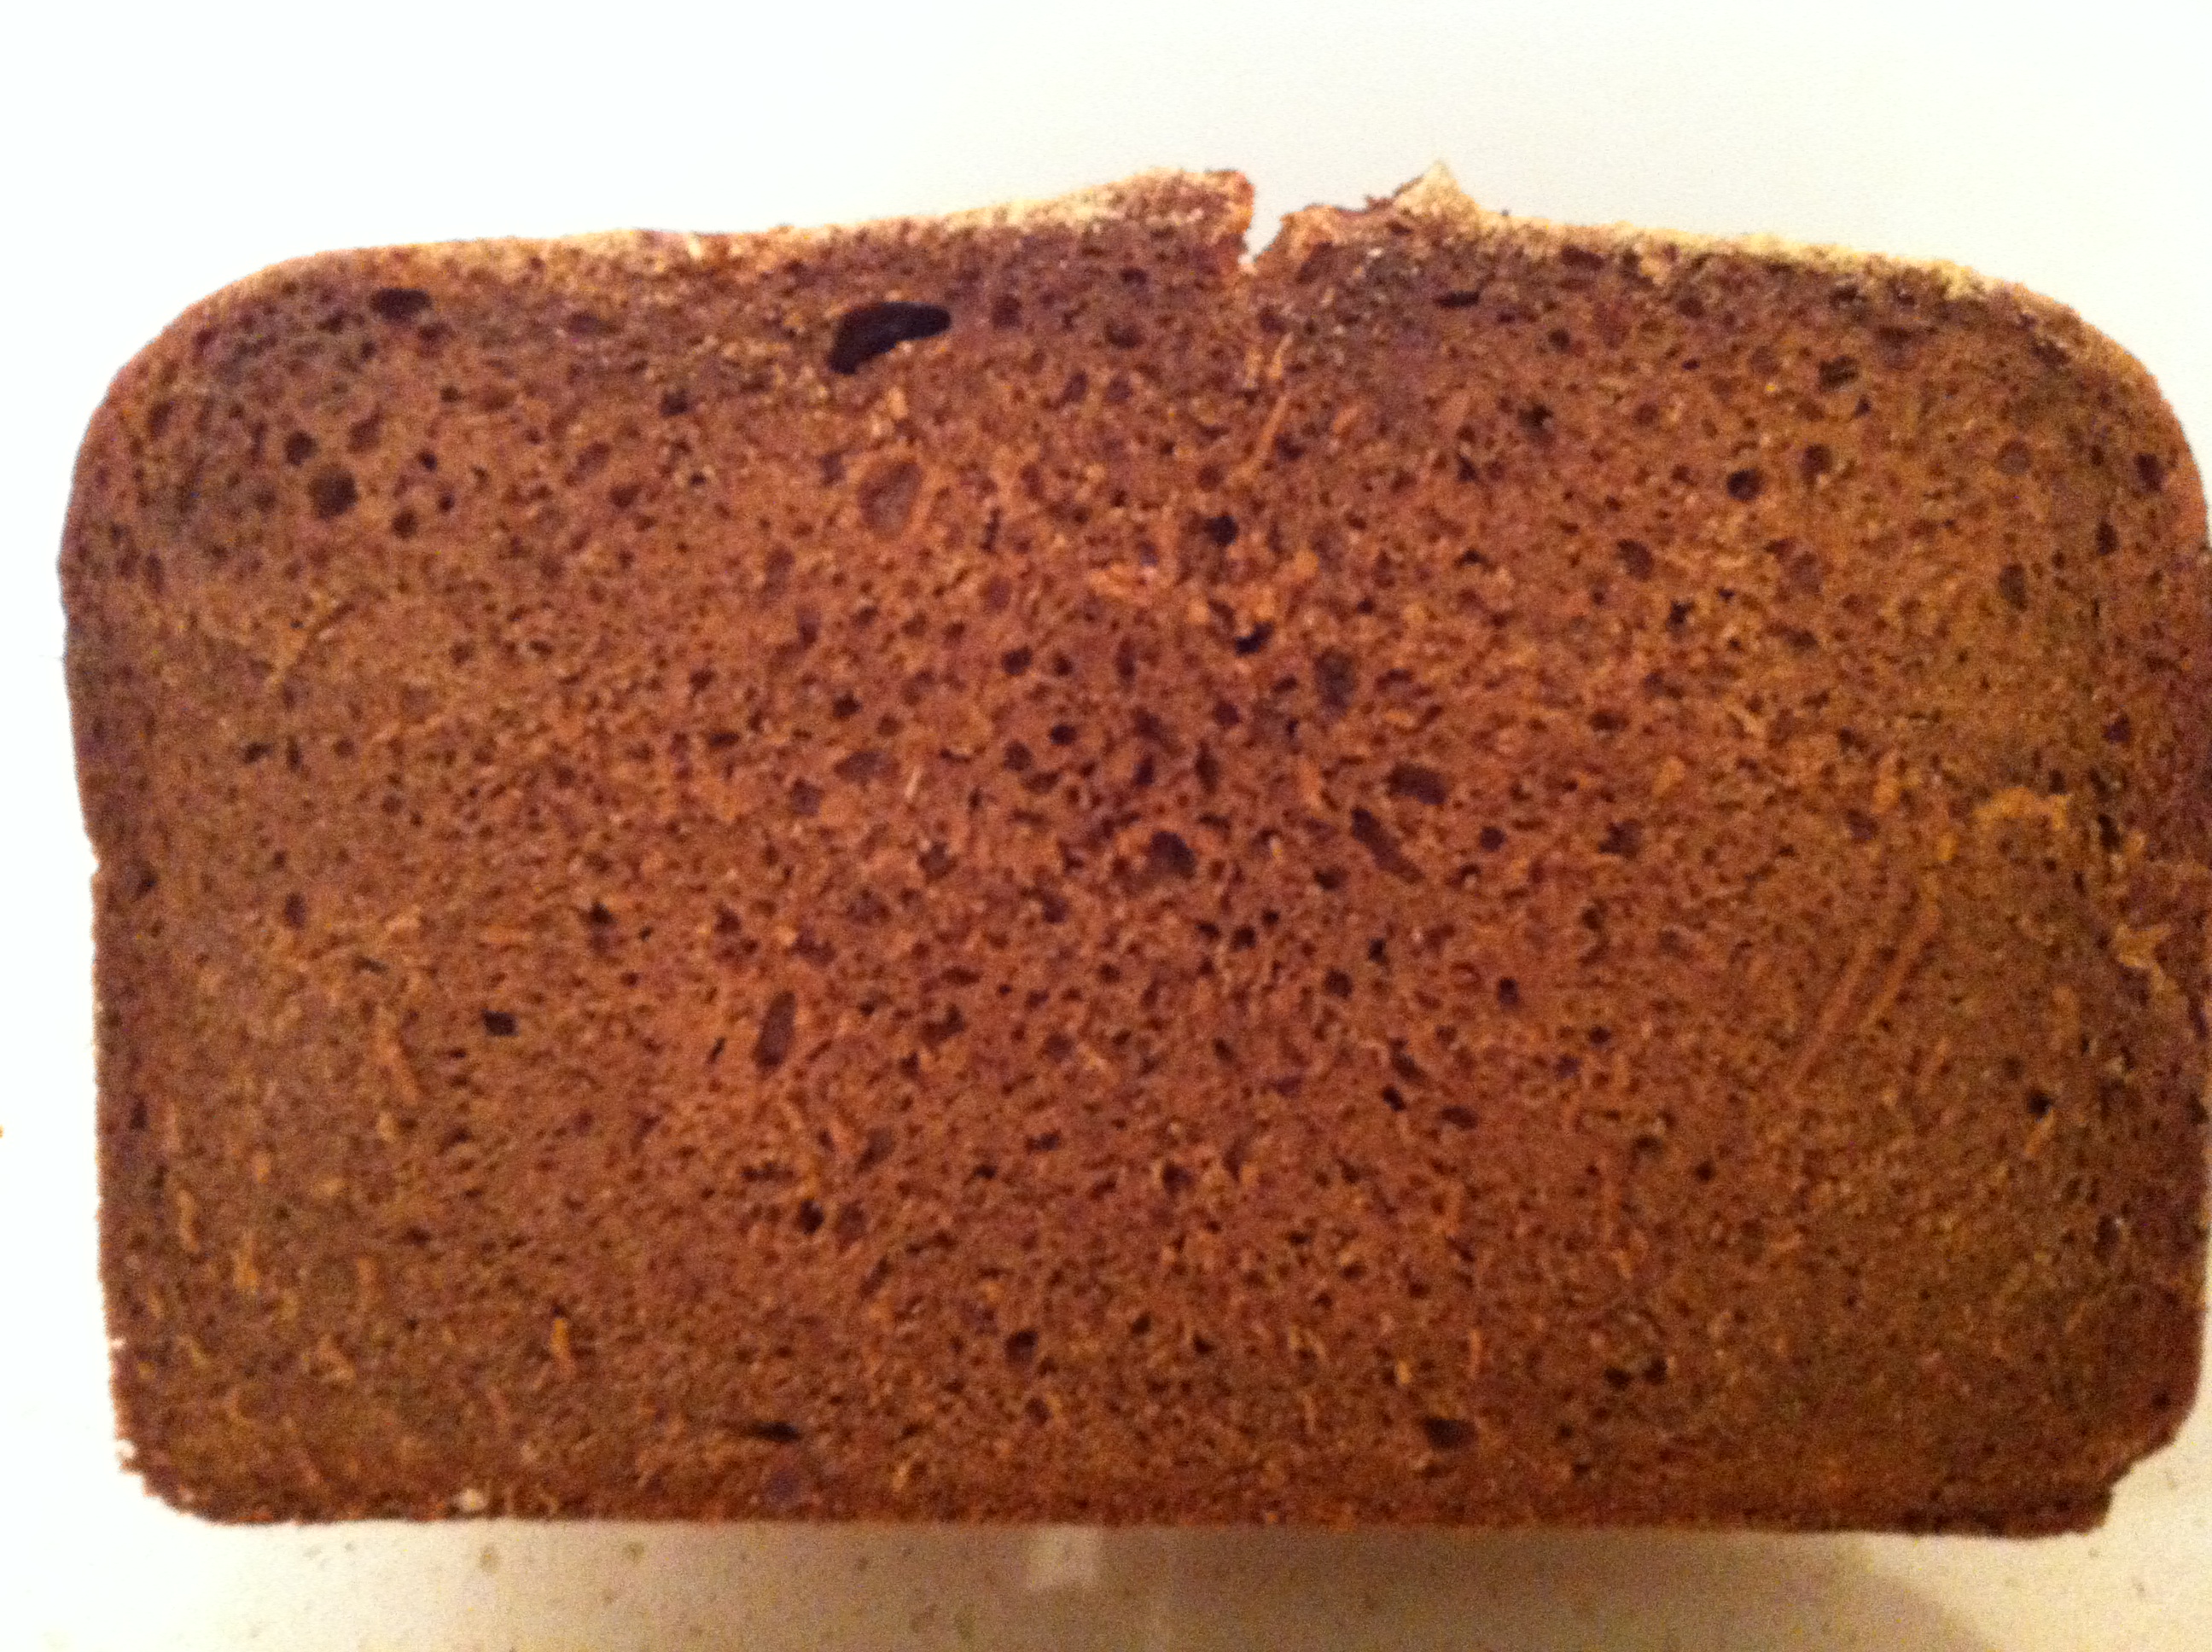 Chleb z kremem żytnim jest prawdziwy (smak prawie zapomniany).Metody pieczenia i dodatki